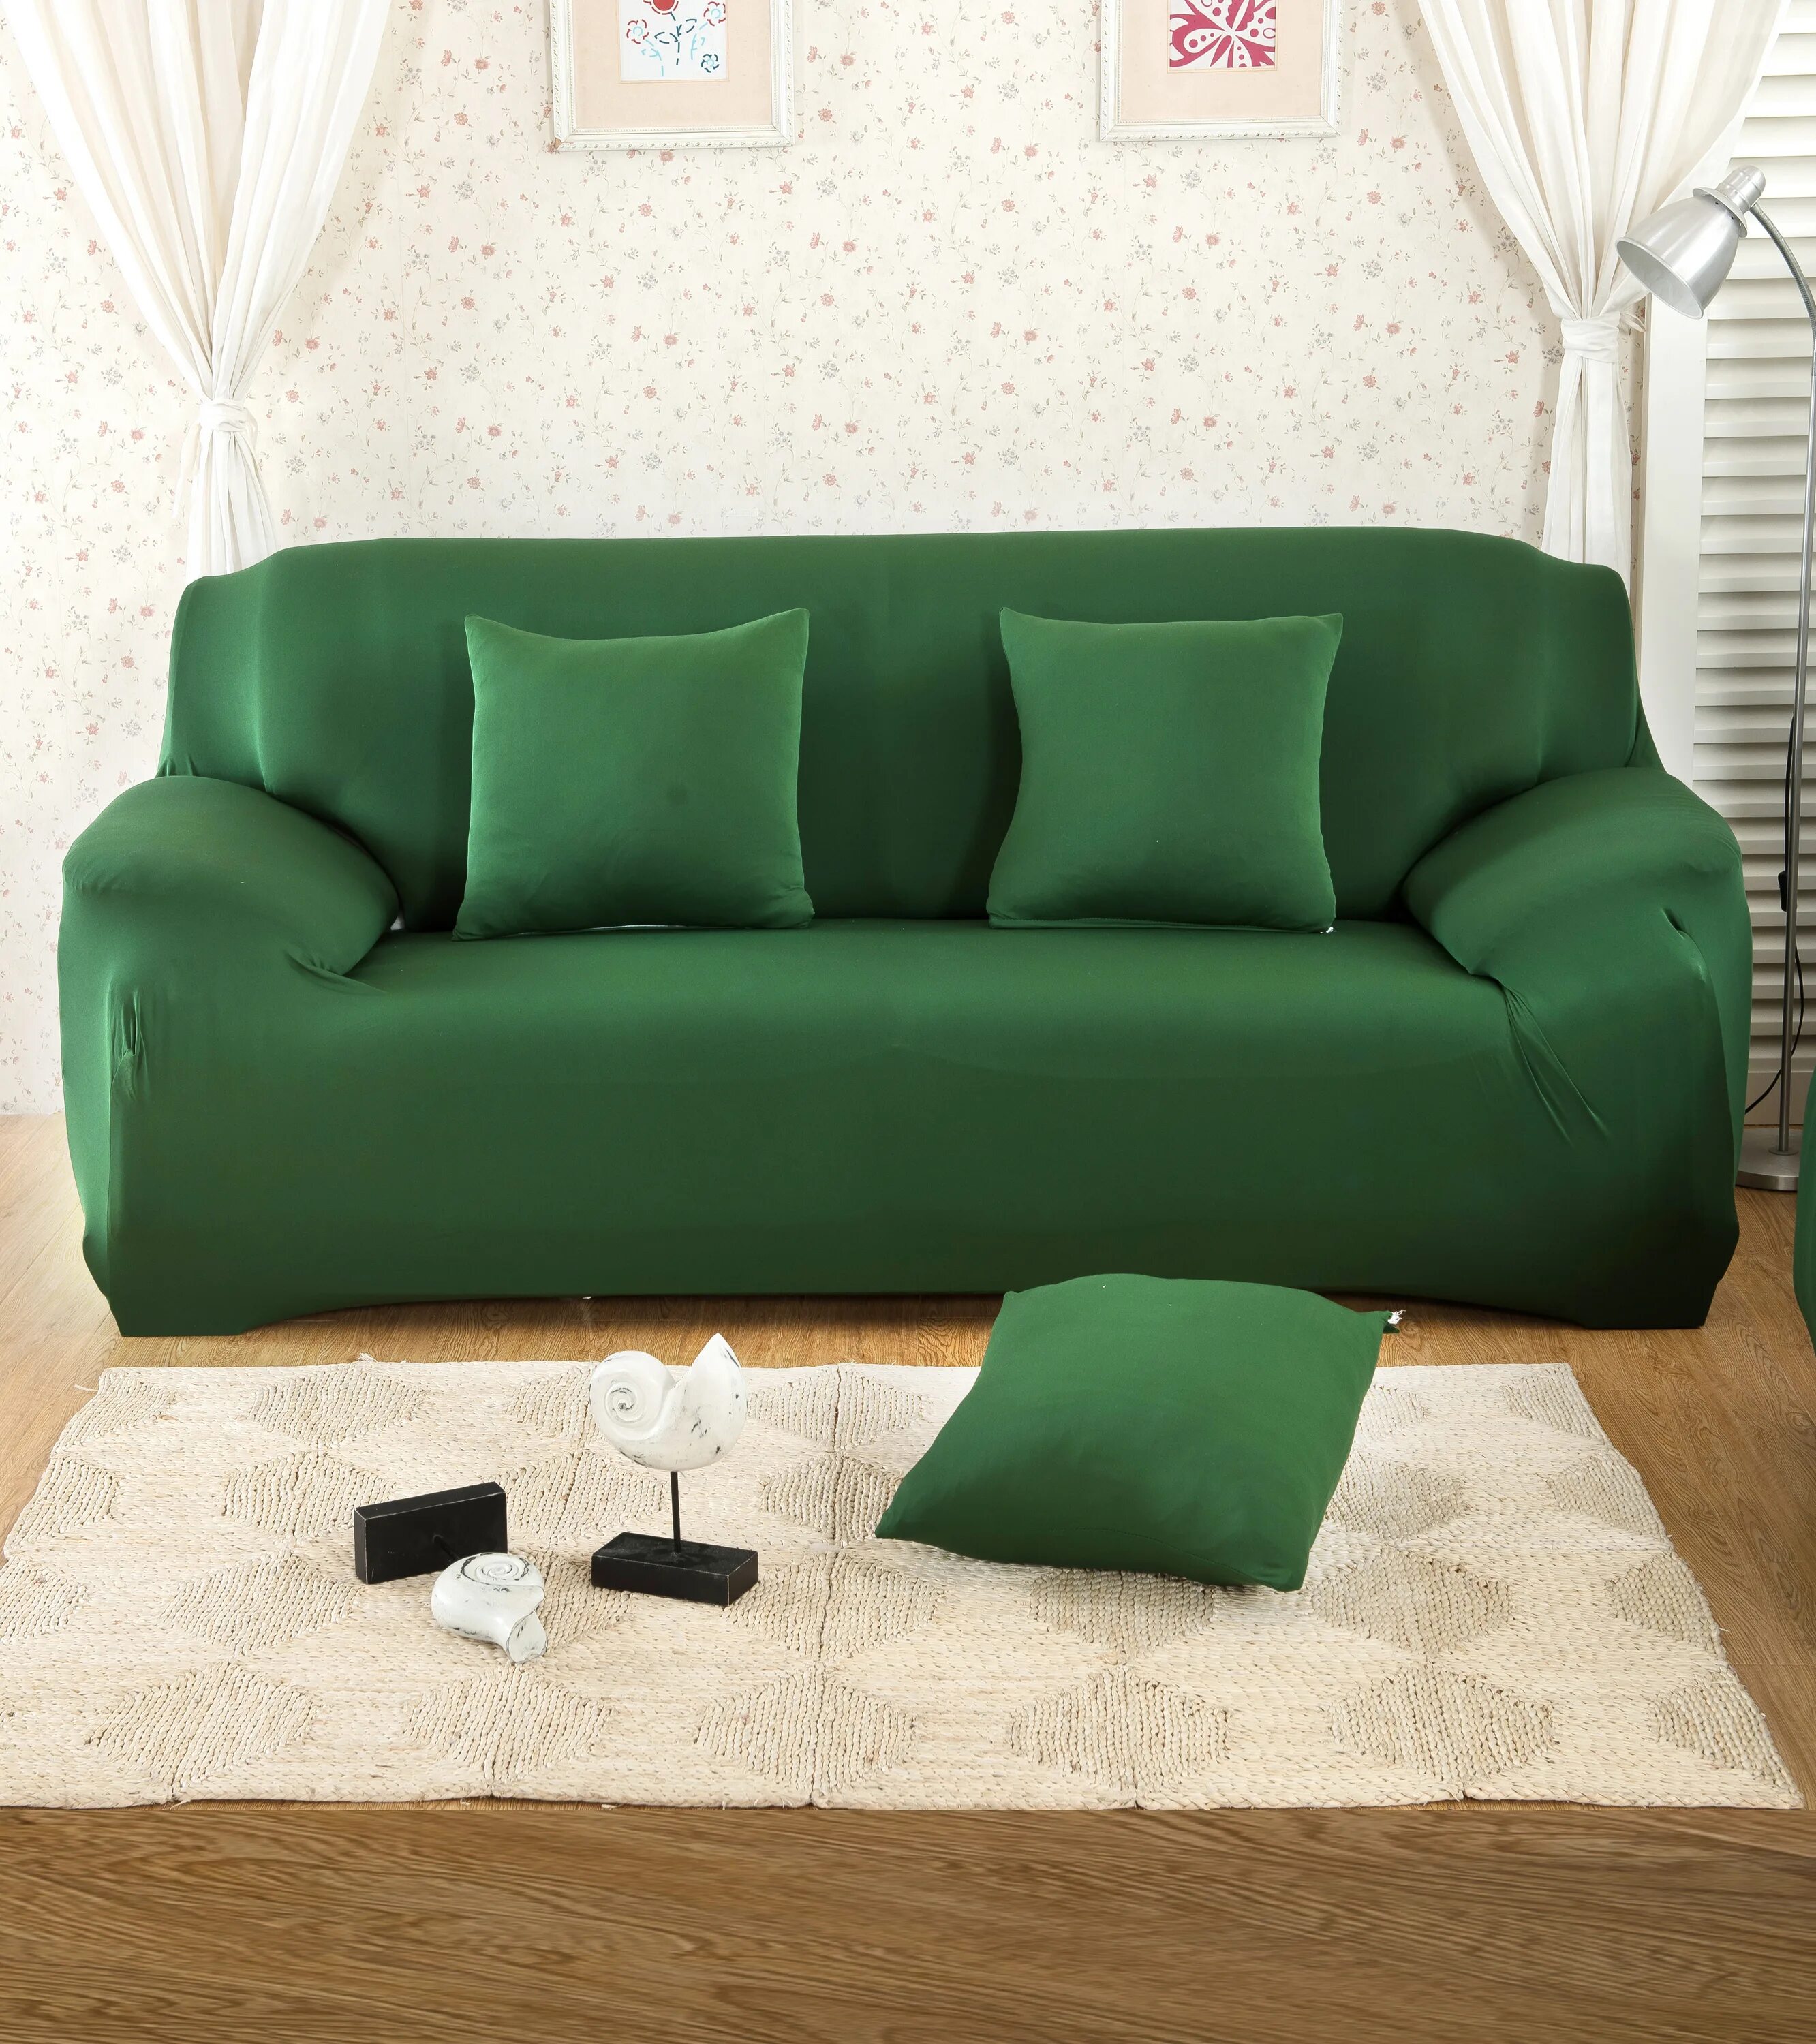 Зеленый диван. Диван зеленого цвета. Салатовый диван. Чехол на диван.